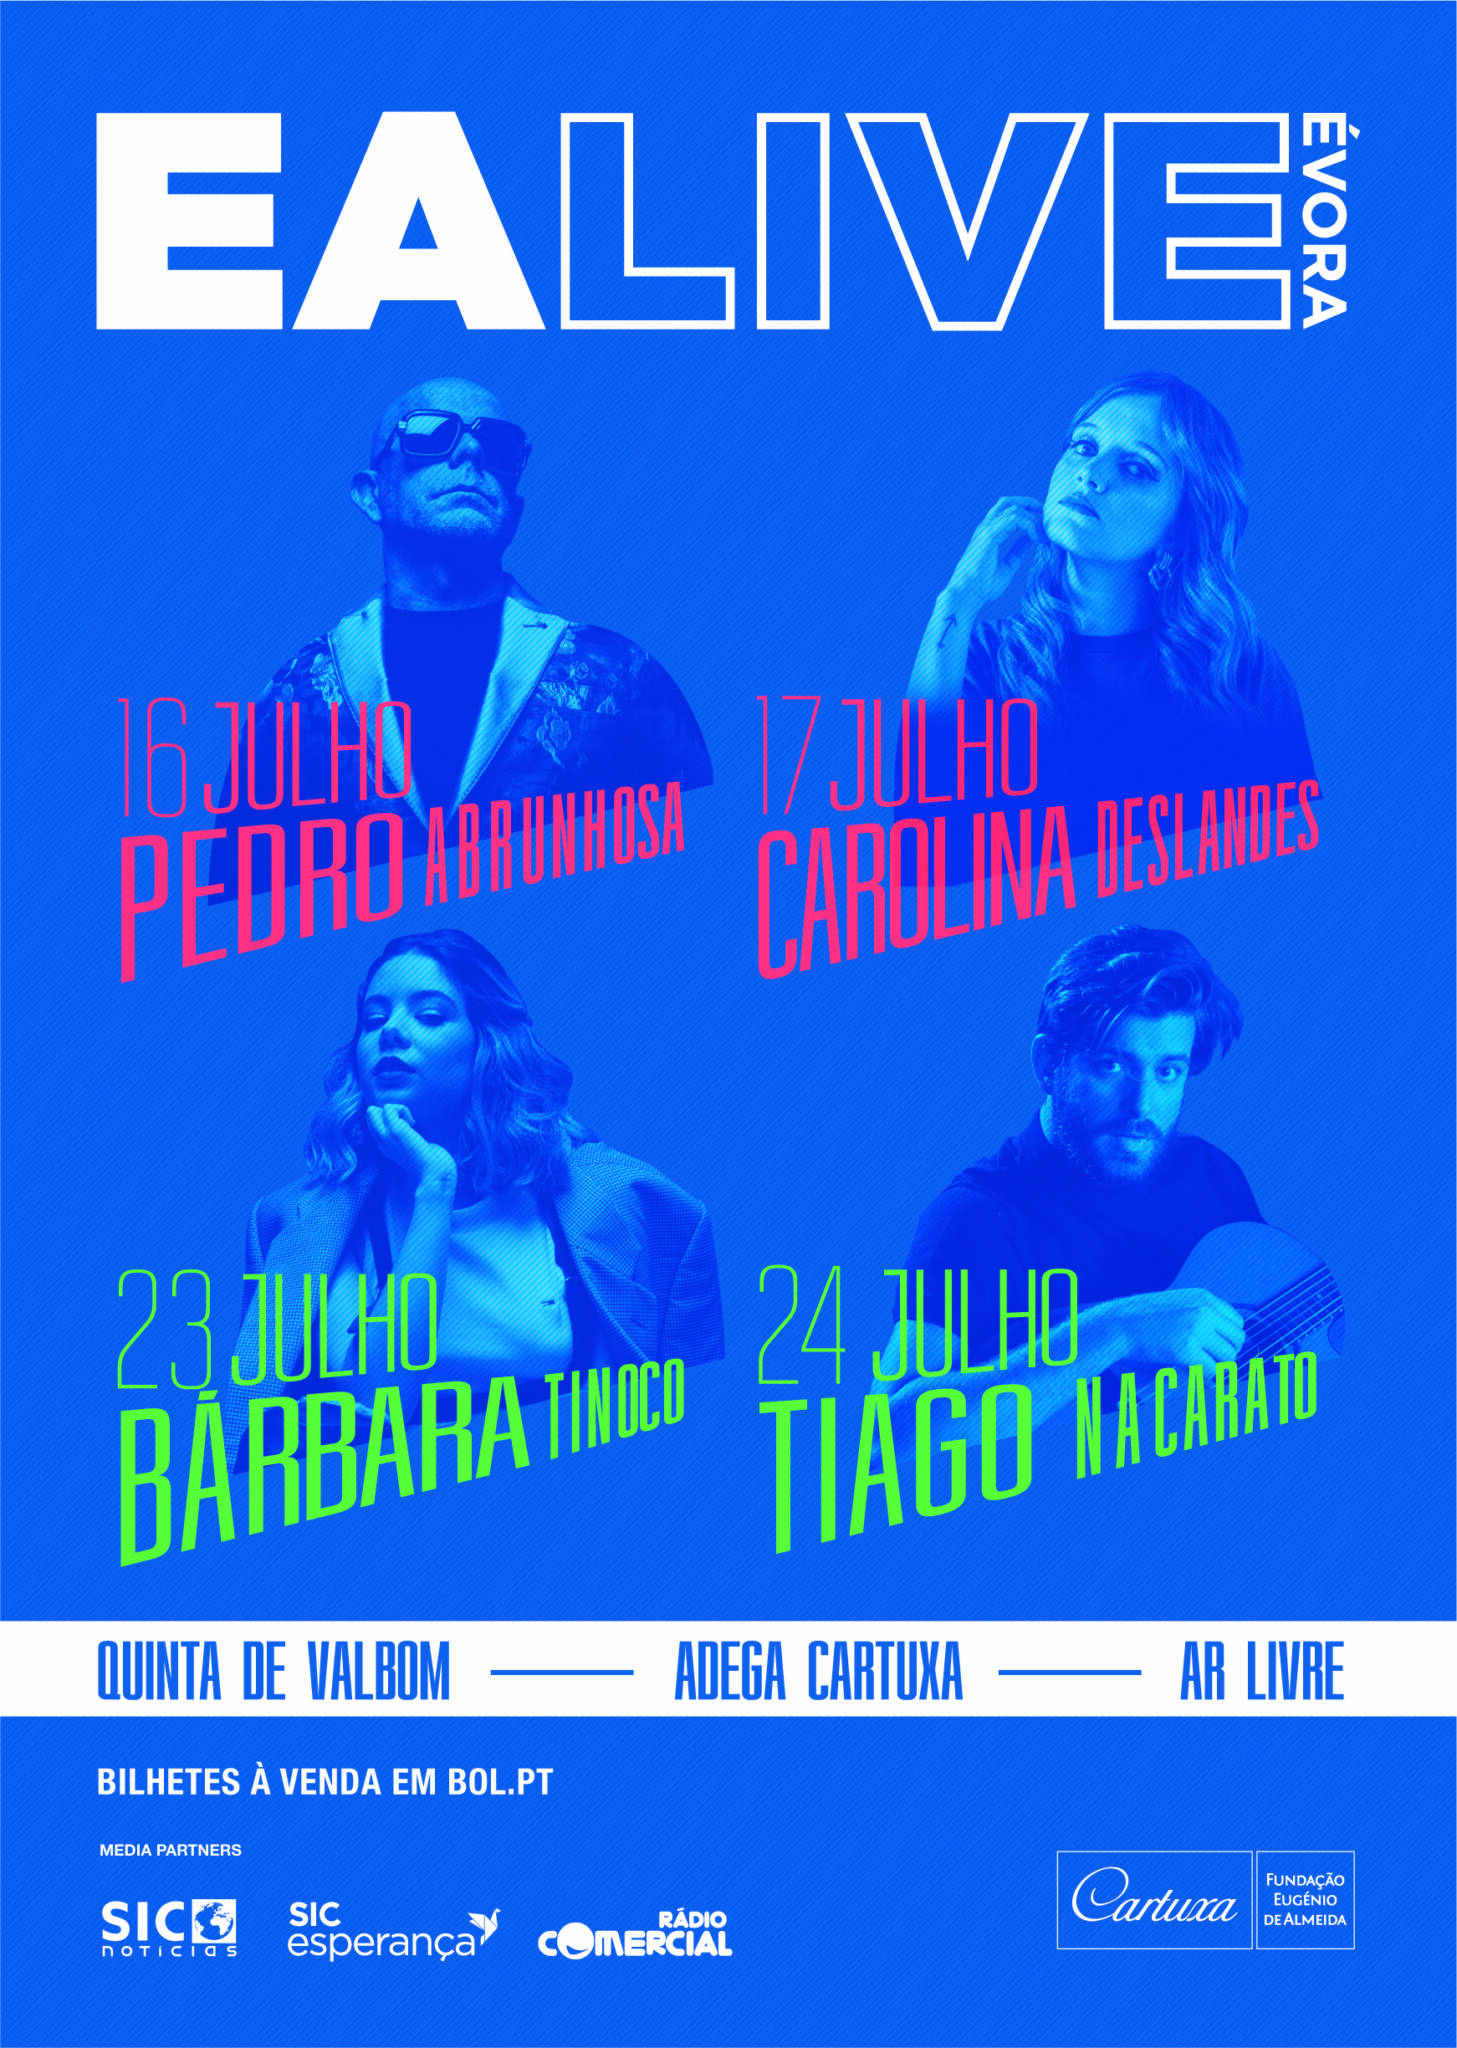 ea live, EA LIVE Évora regressa em Julho com Pedro Abrunhosa e Carolina Deslandes no cartaz